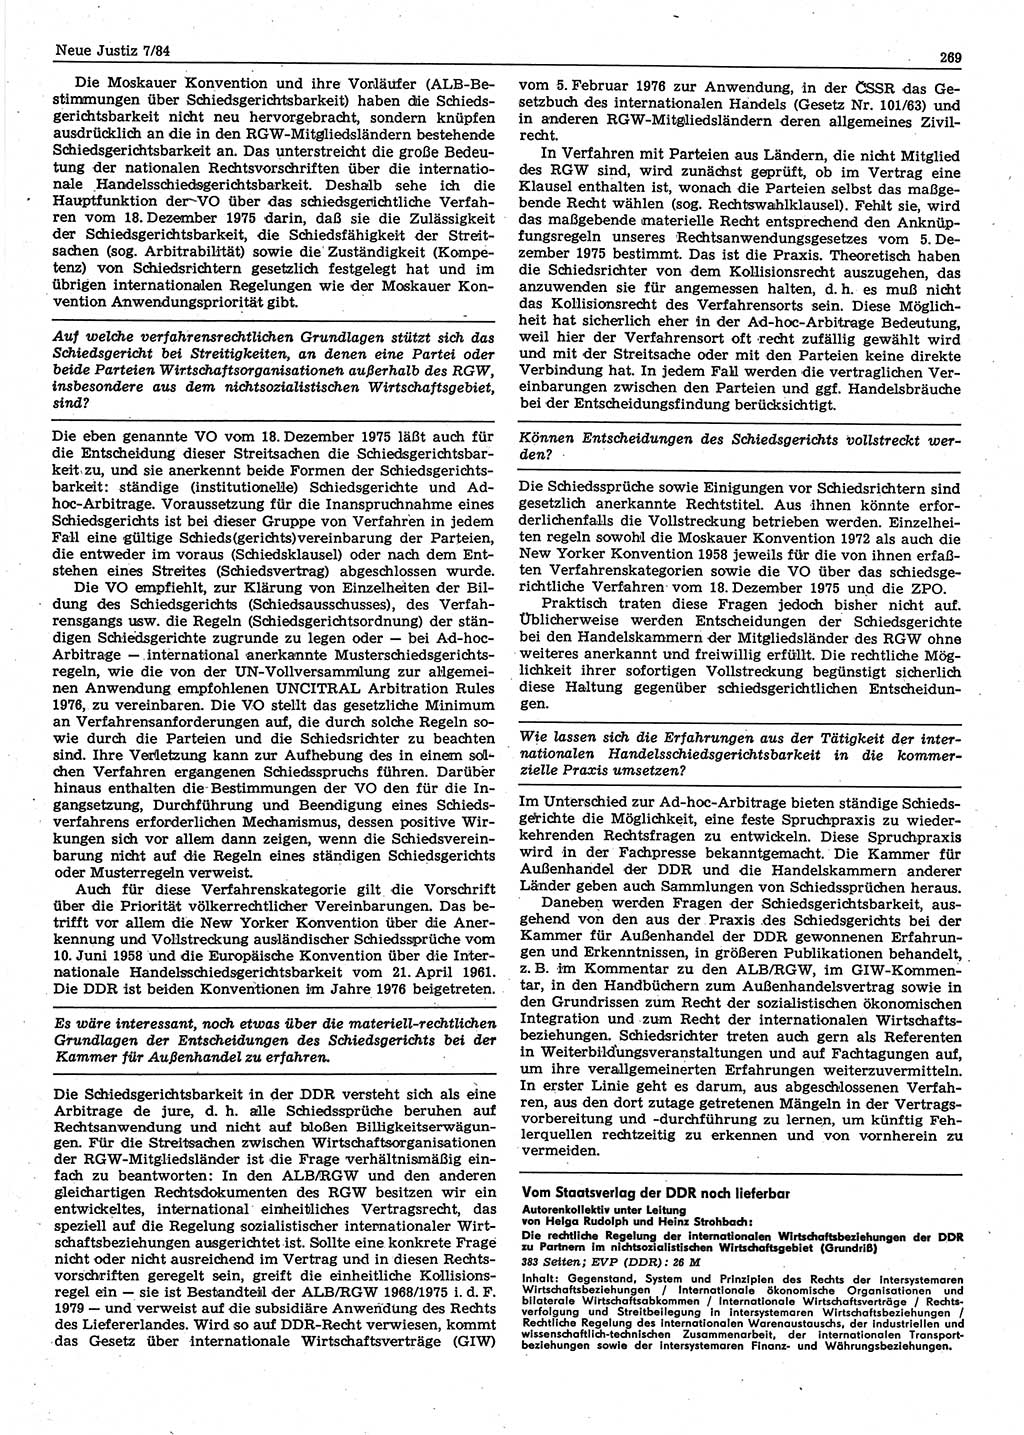 Neue Justiz (NJ), Zeitschrift für sozialistisches Recht und Gesetzlichkeit [Deutsche Demokratische Republik (DDR)], 38. Jahrgang 1984, Seite 269 (NJ DDR 1984, S. 269)